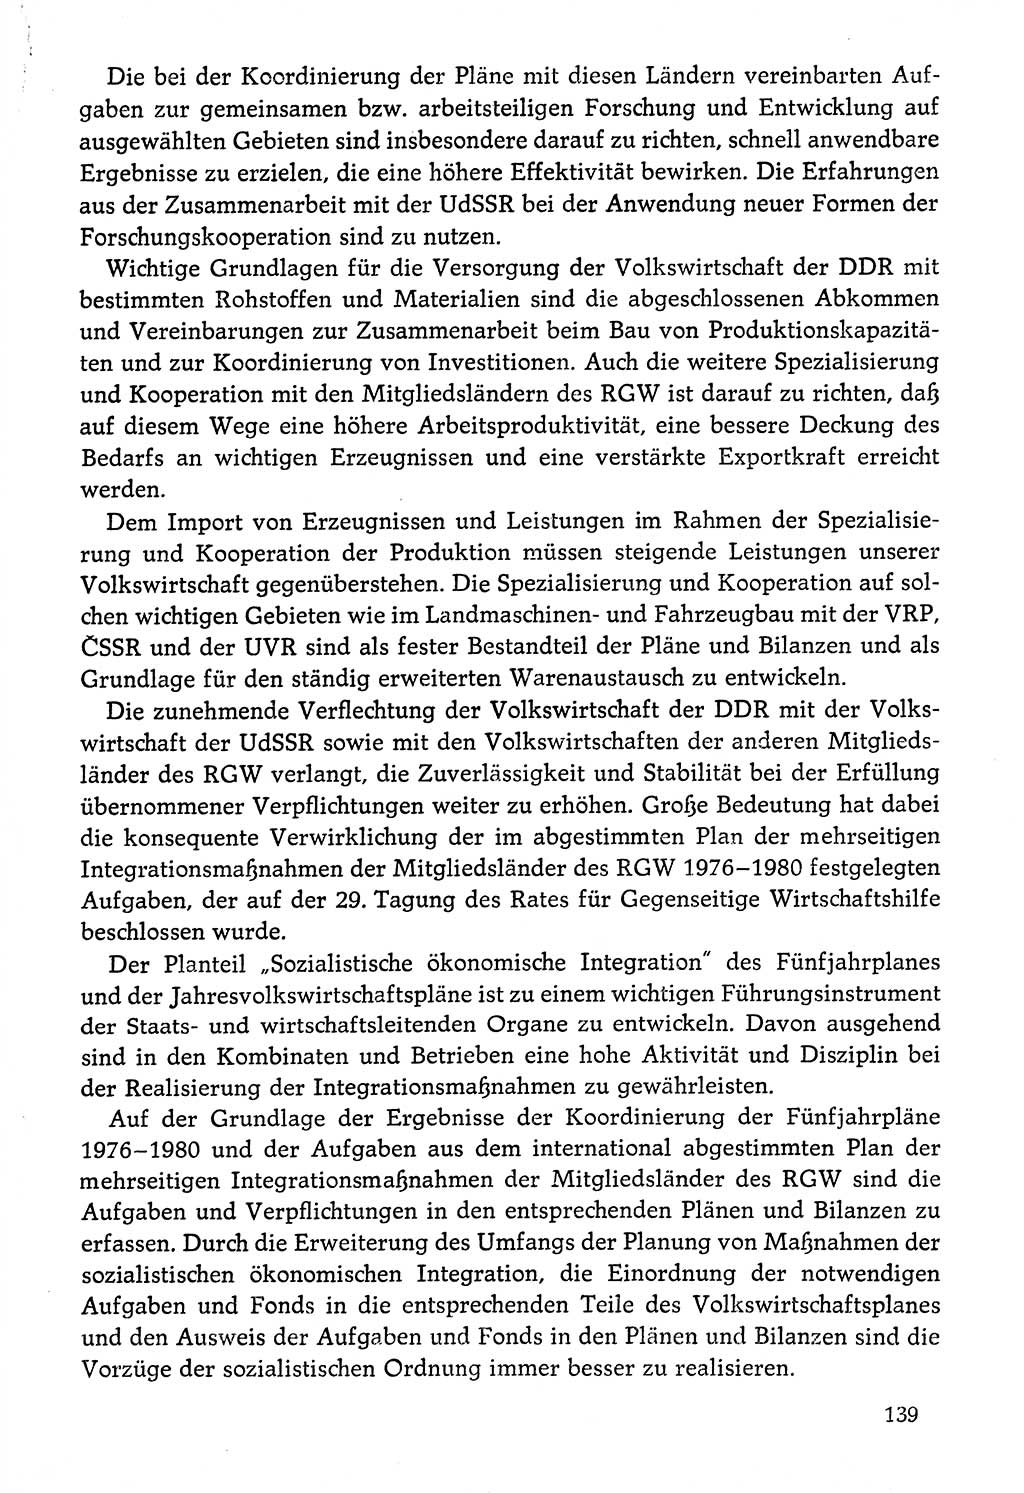 Dokumente der Sozialistischen Einheitspartei Deutschlands (SED) [Deutsche Demokratische Republik (DDR)] 1976-1977, Seite 139 (Dok. SED DDR 1976-1977, S. 139)